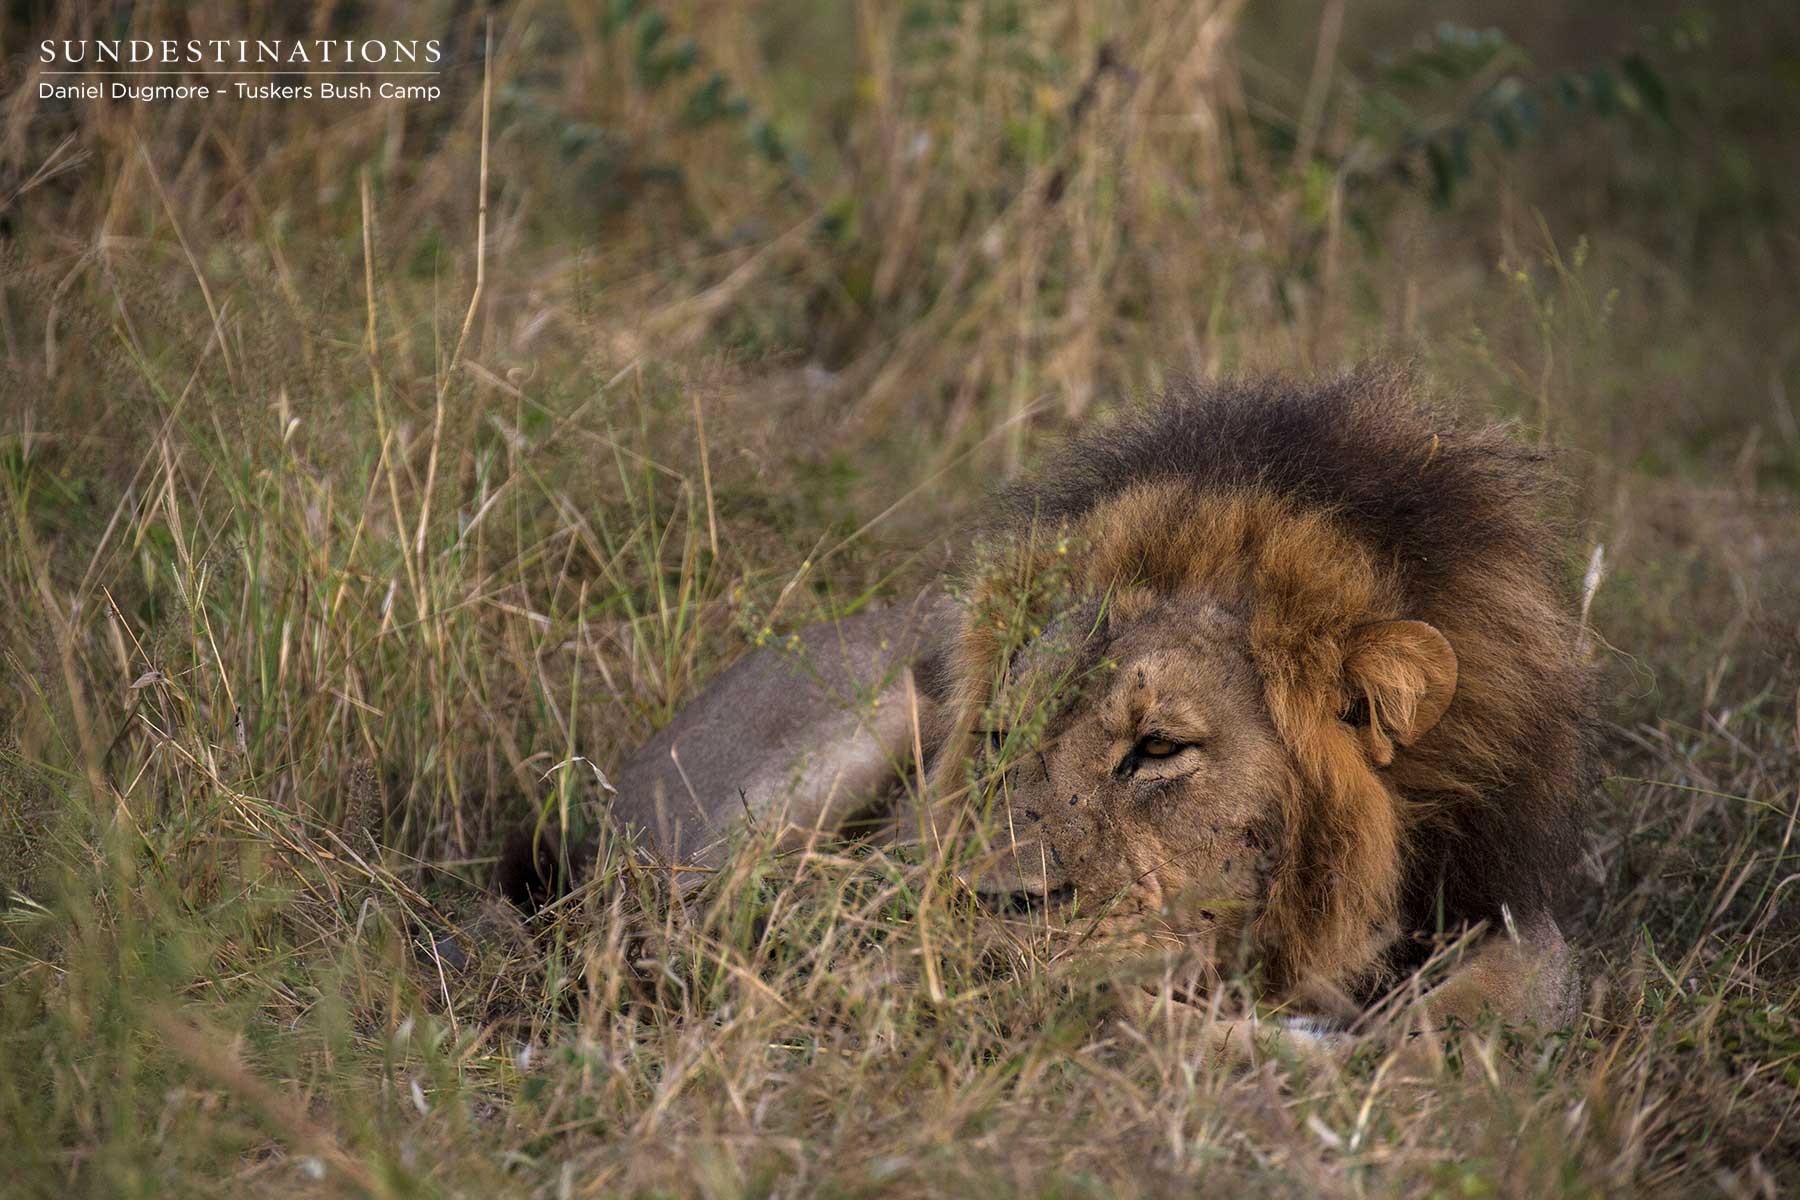 Male Lion Tuskers Bush Camp